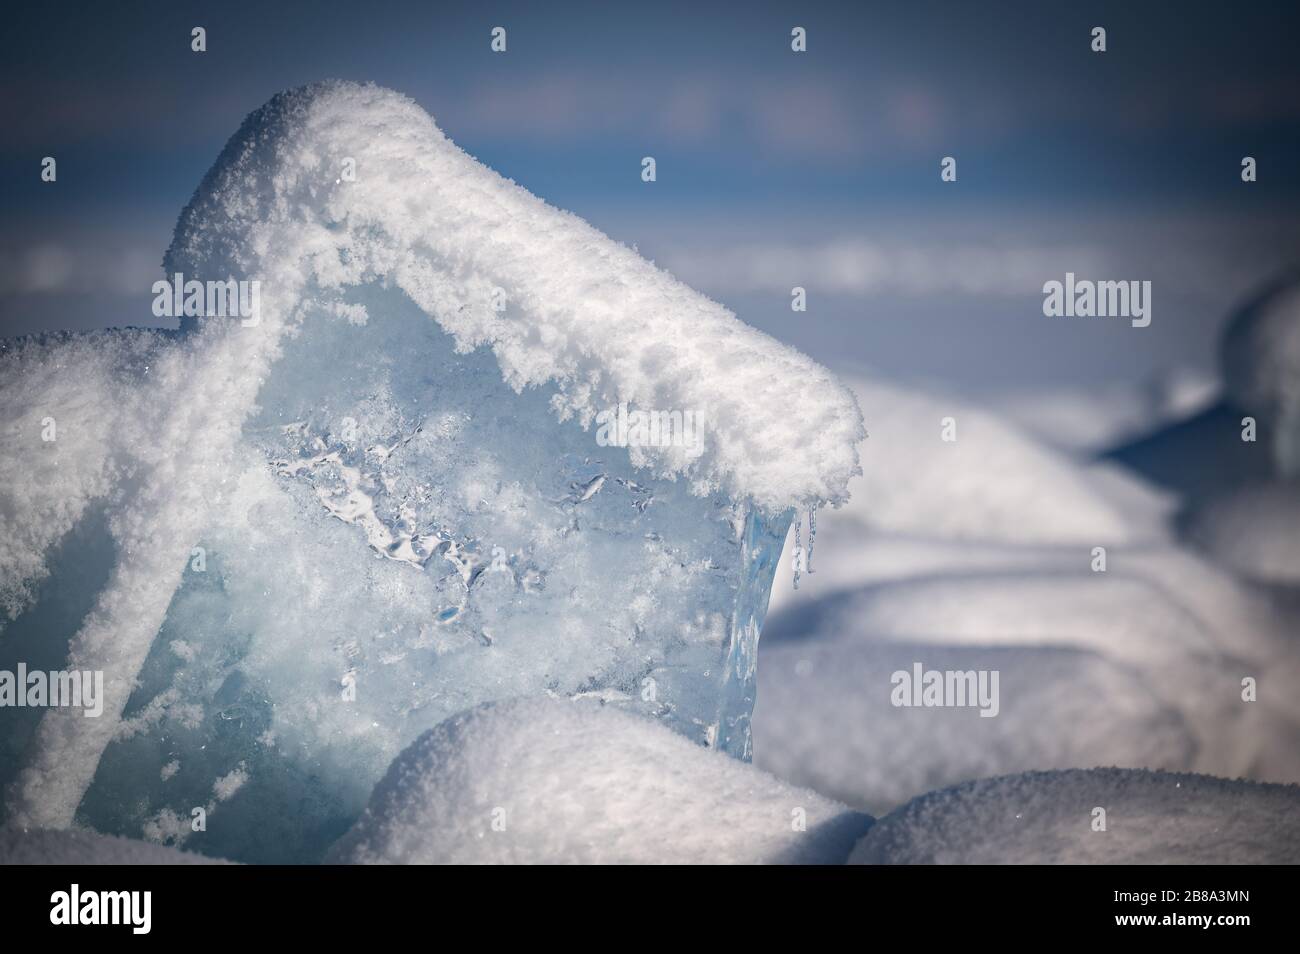 Durchsichtiges blaues Eis schwimmt an einem sonnigen Tag in Eishömmeln gegen einen blauen Himmel. Ungewöhnliche Winterlandschaft des zugefrorenen Baikalsee. Natürliche Kälte B. Stockfoto